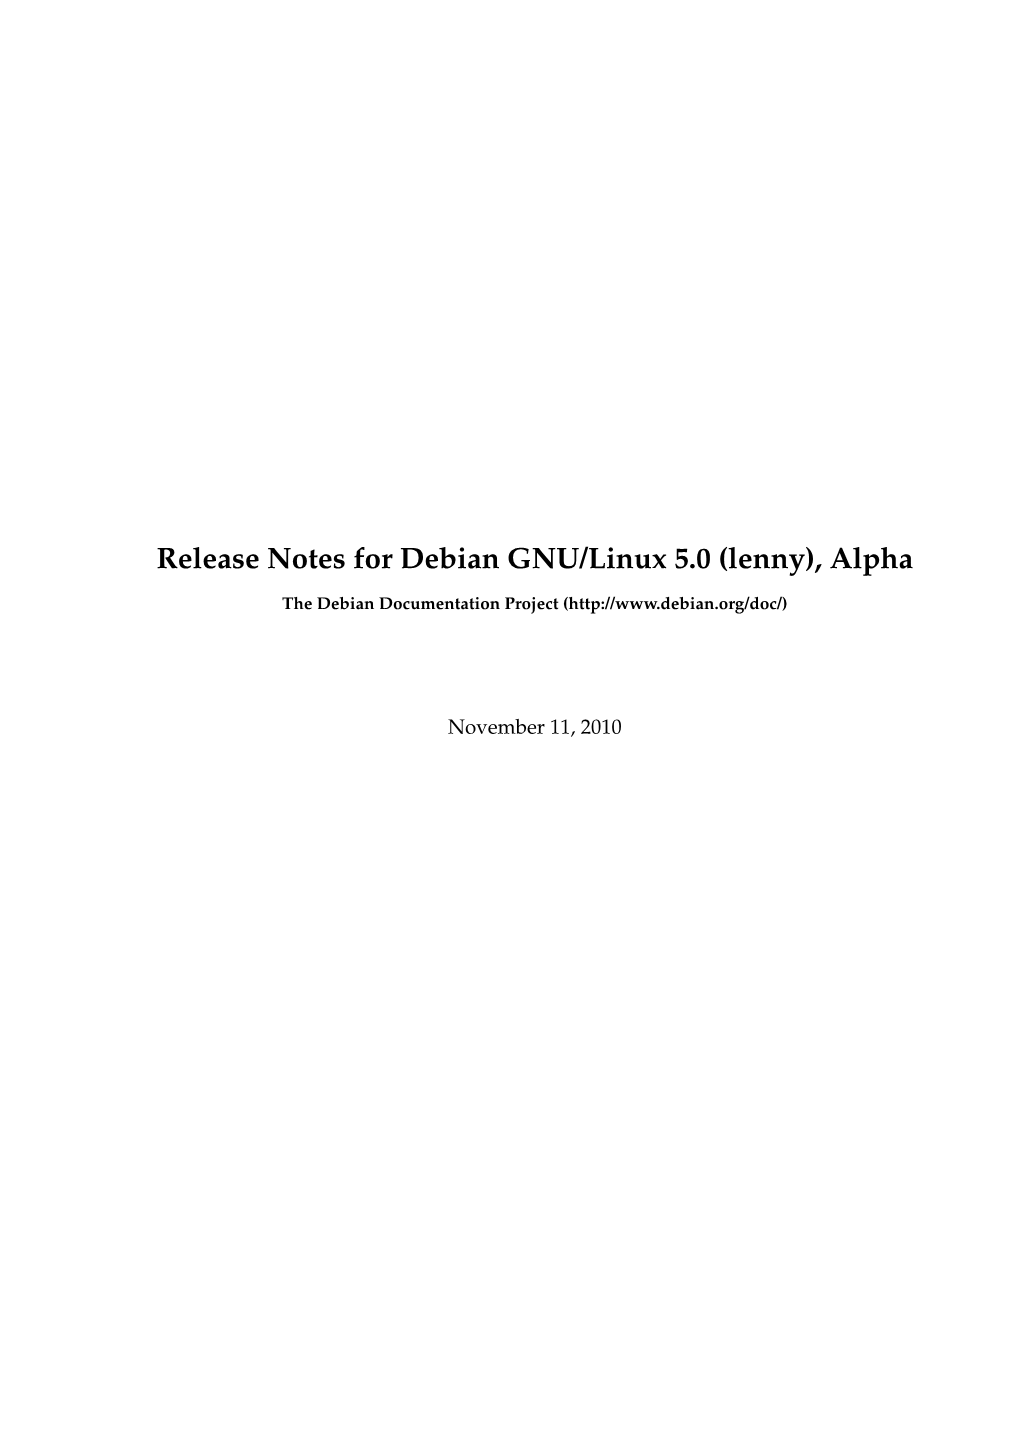 Release Notes for Debian GNU/Linux 5.0 (Lenny), Alpha